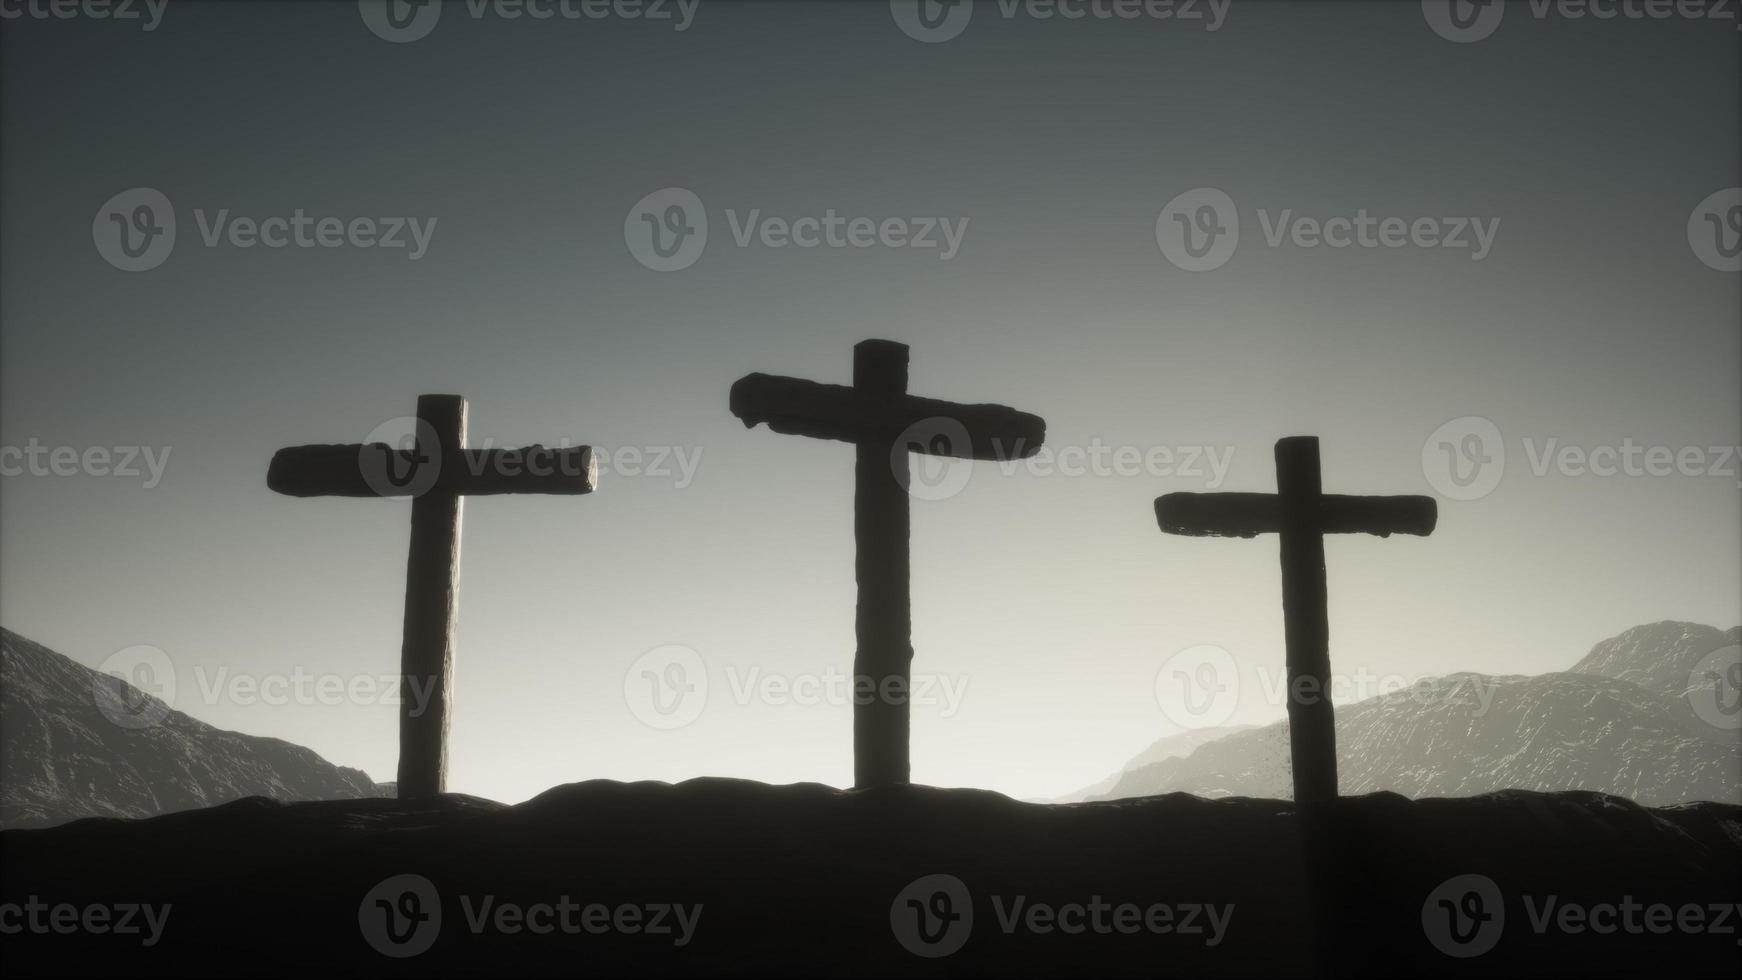 croix de crucifix en bois à la montagne photo